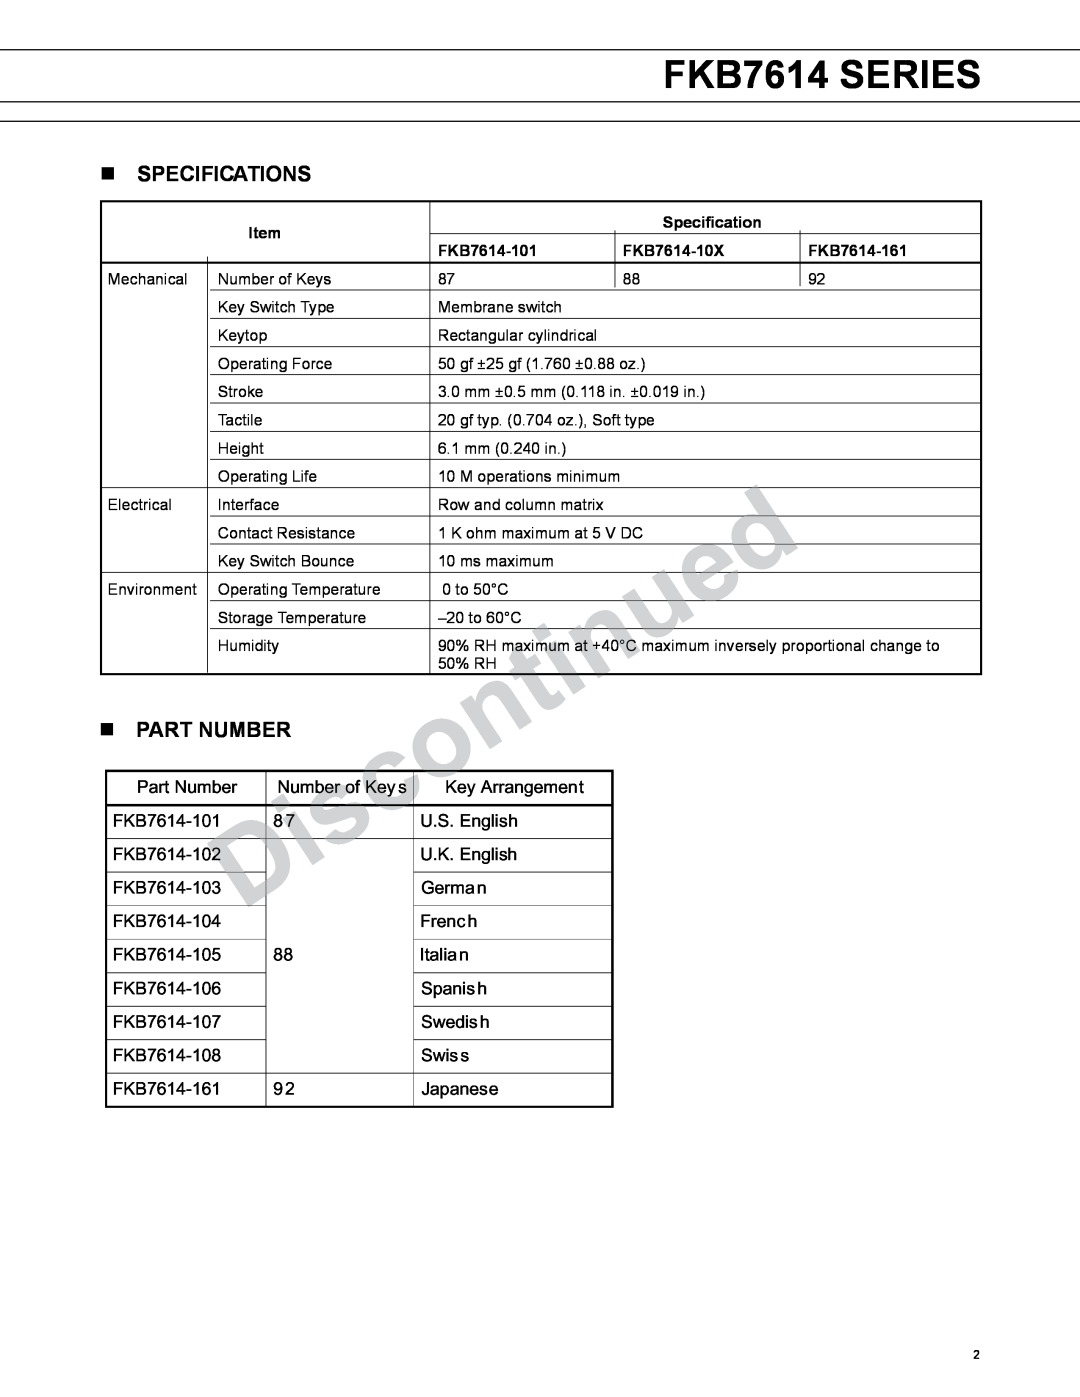 Fujitsu FKB7614 SERIES manual n SPECIFICATIONS, n PART NUMBER 